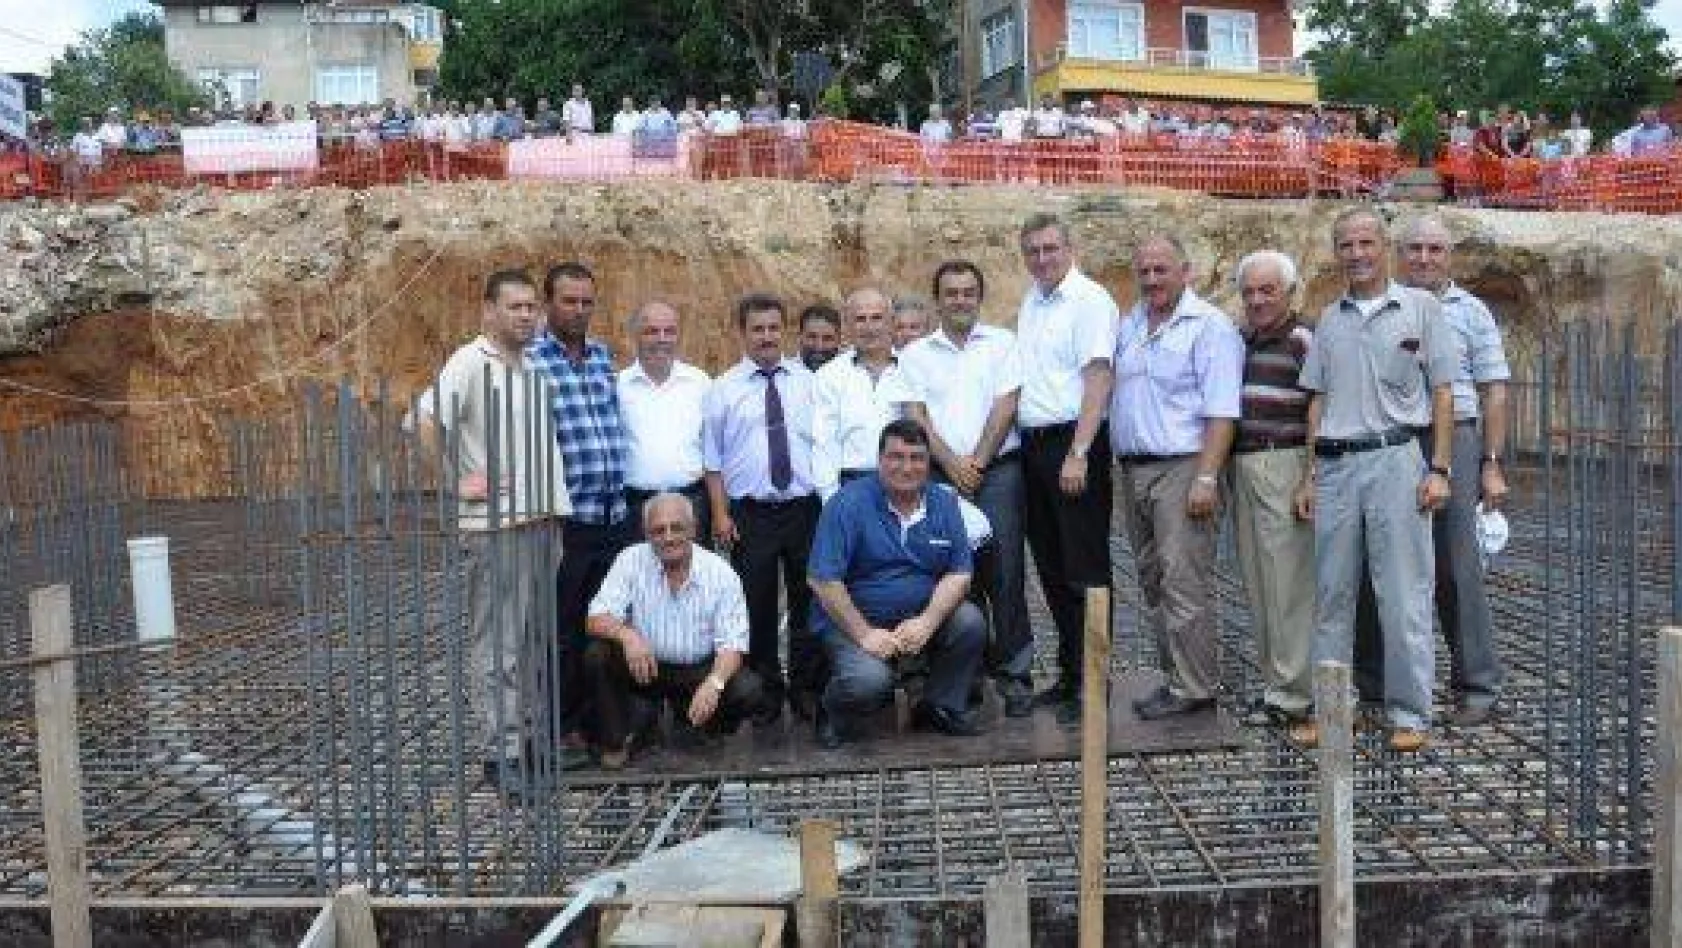 Akalan Köyü Camisinin Temeli Atıldı